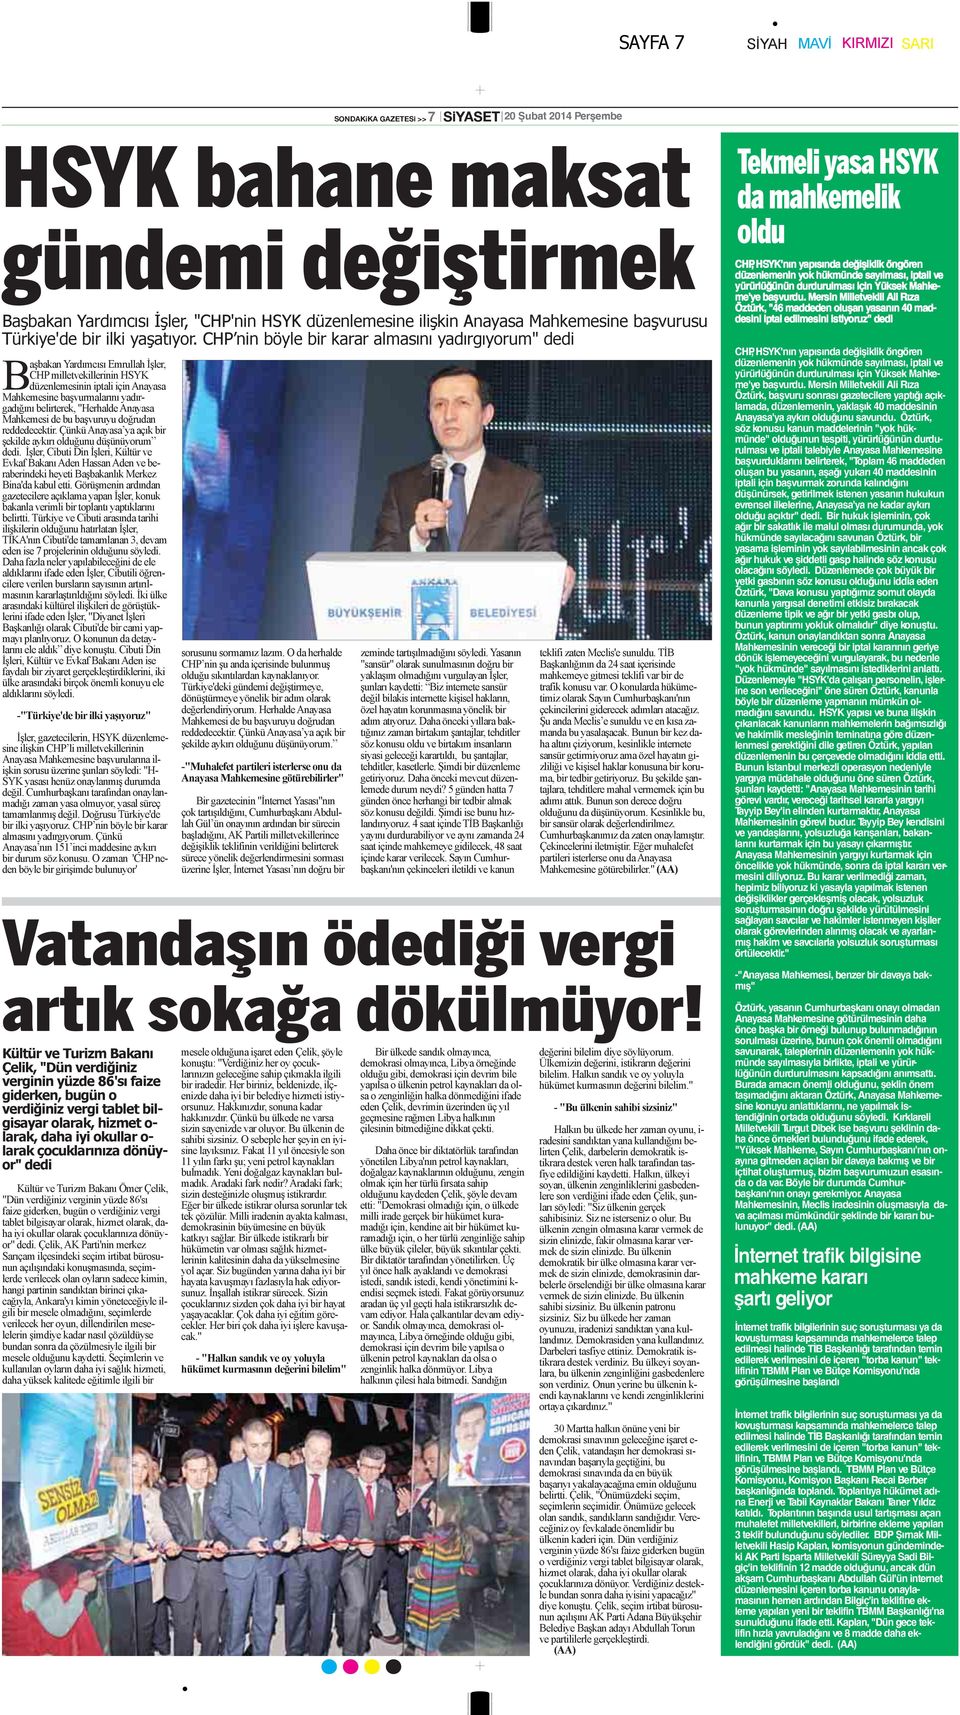 CHP nin böyle bir karar almasını yadırgıyorum" dedi Başbakan Yardımcısı Emrullah İşler, CHP milletvekillerinin HSYK düzenlemesinin iptali için Anayasa Mahkemesine başvurmalarını yadırgadığını